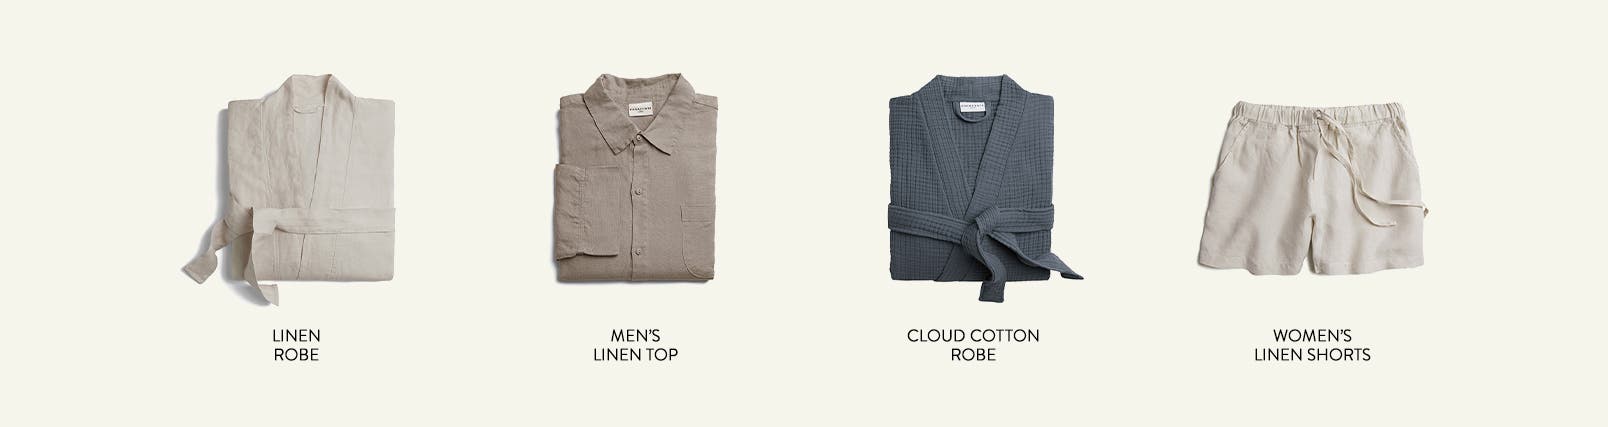 Linen robe, men's linen top, cloud cotton robe and women's linen shorts.